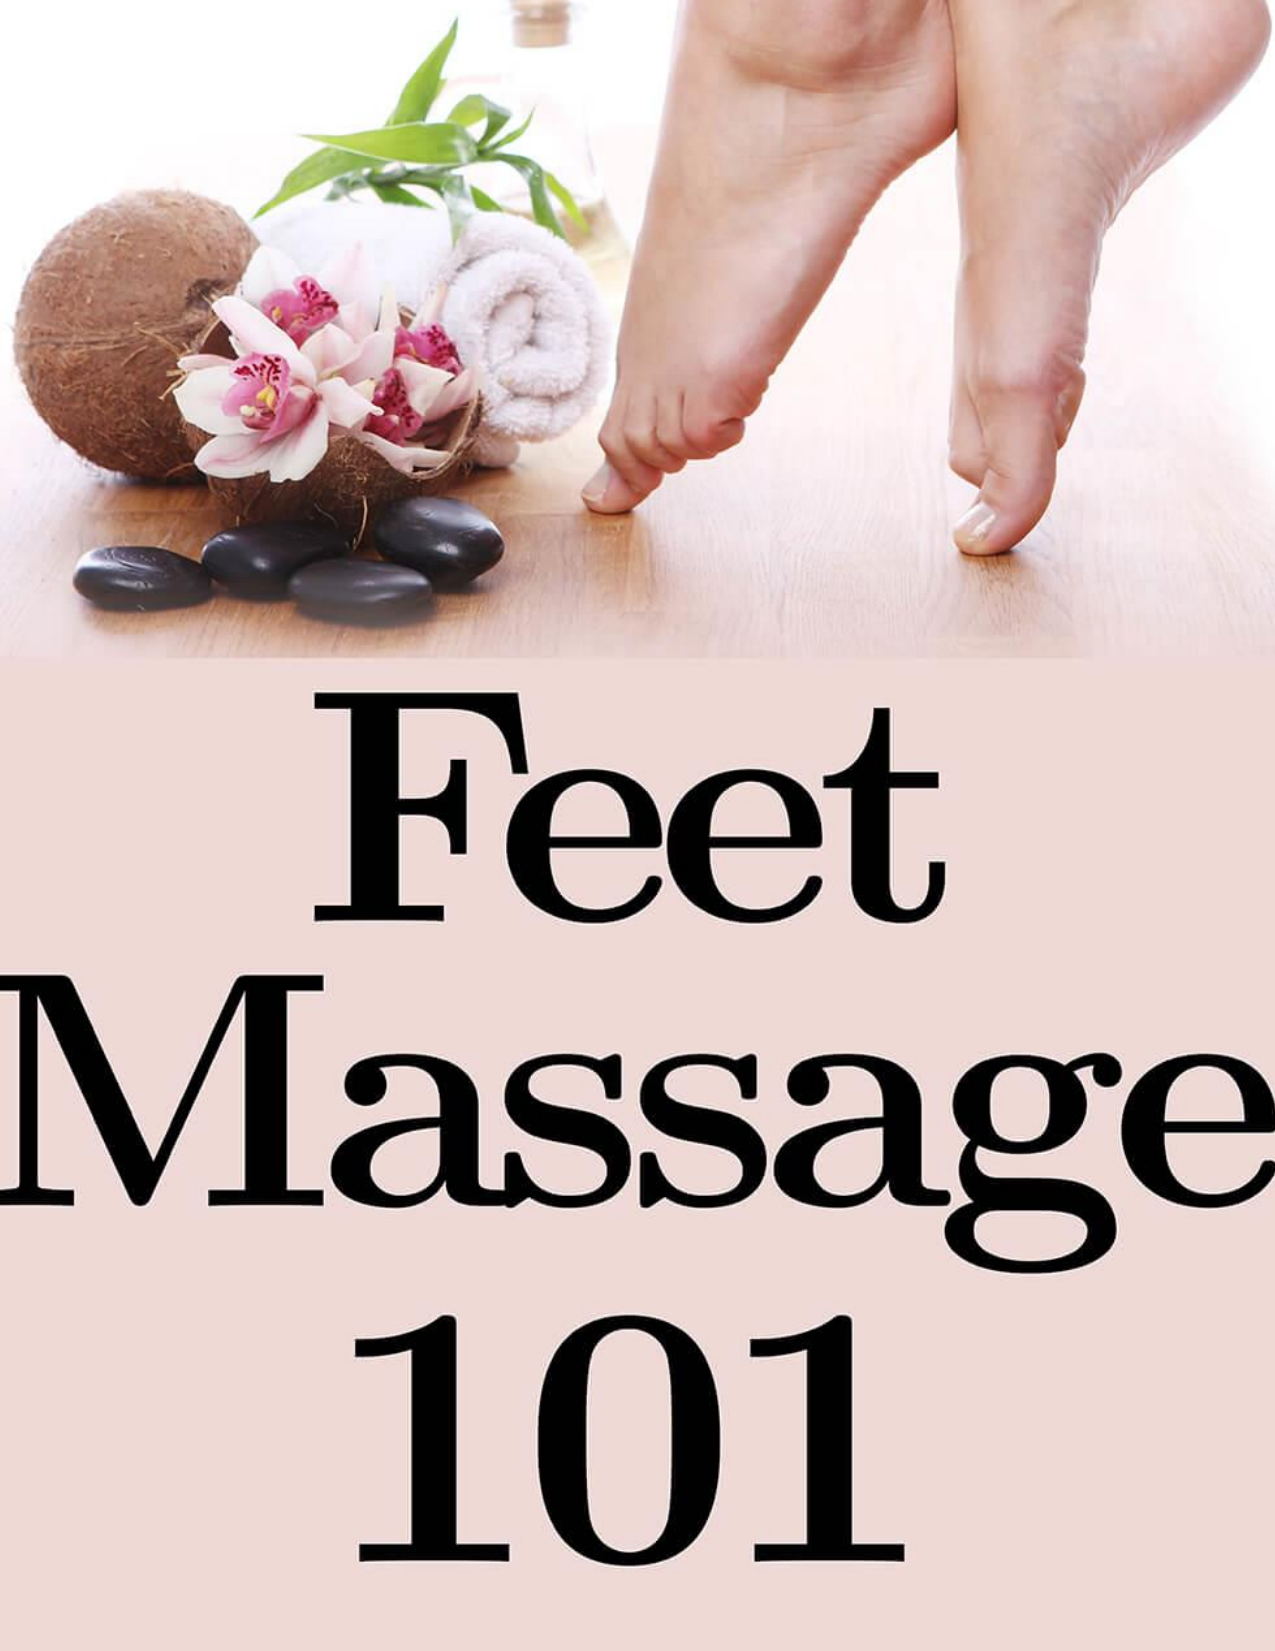 Feet Massage 101